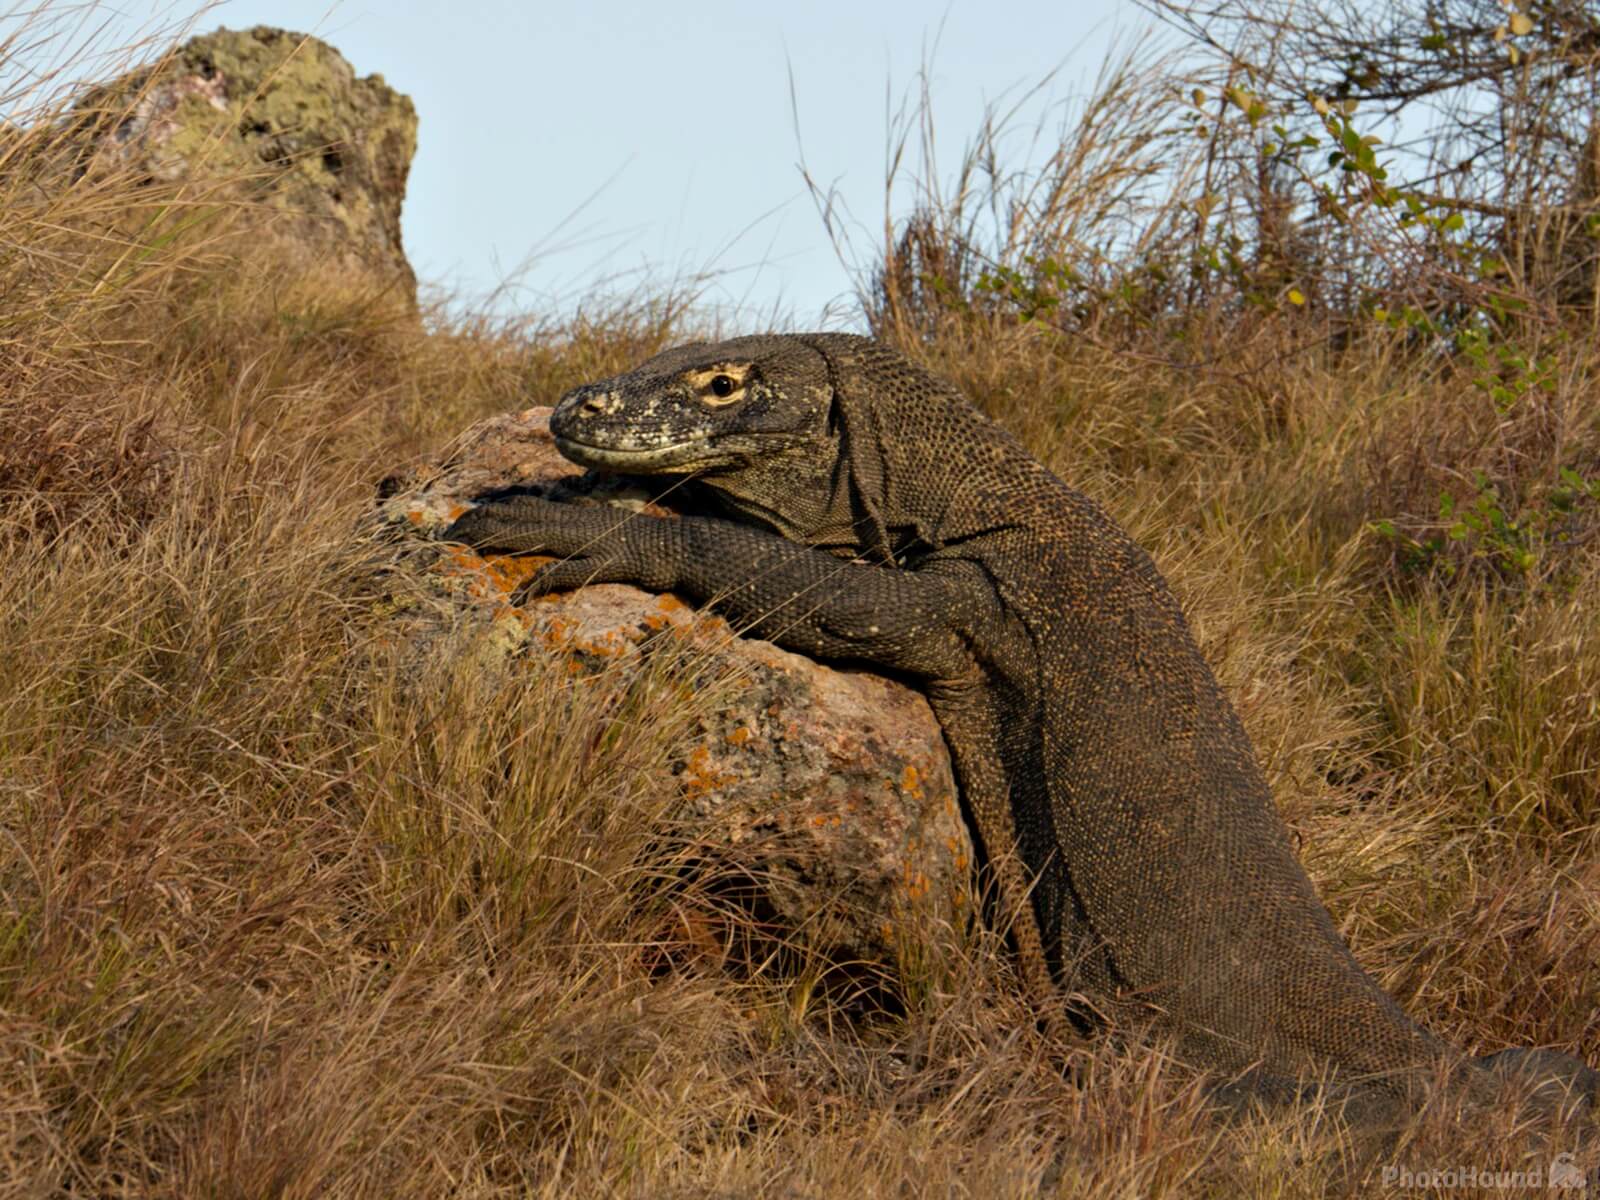 Image of Komodo National Park - Rinca Island by Sheila Giles